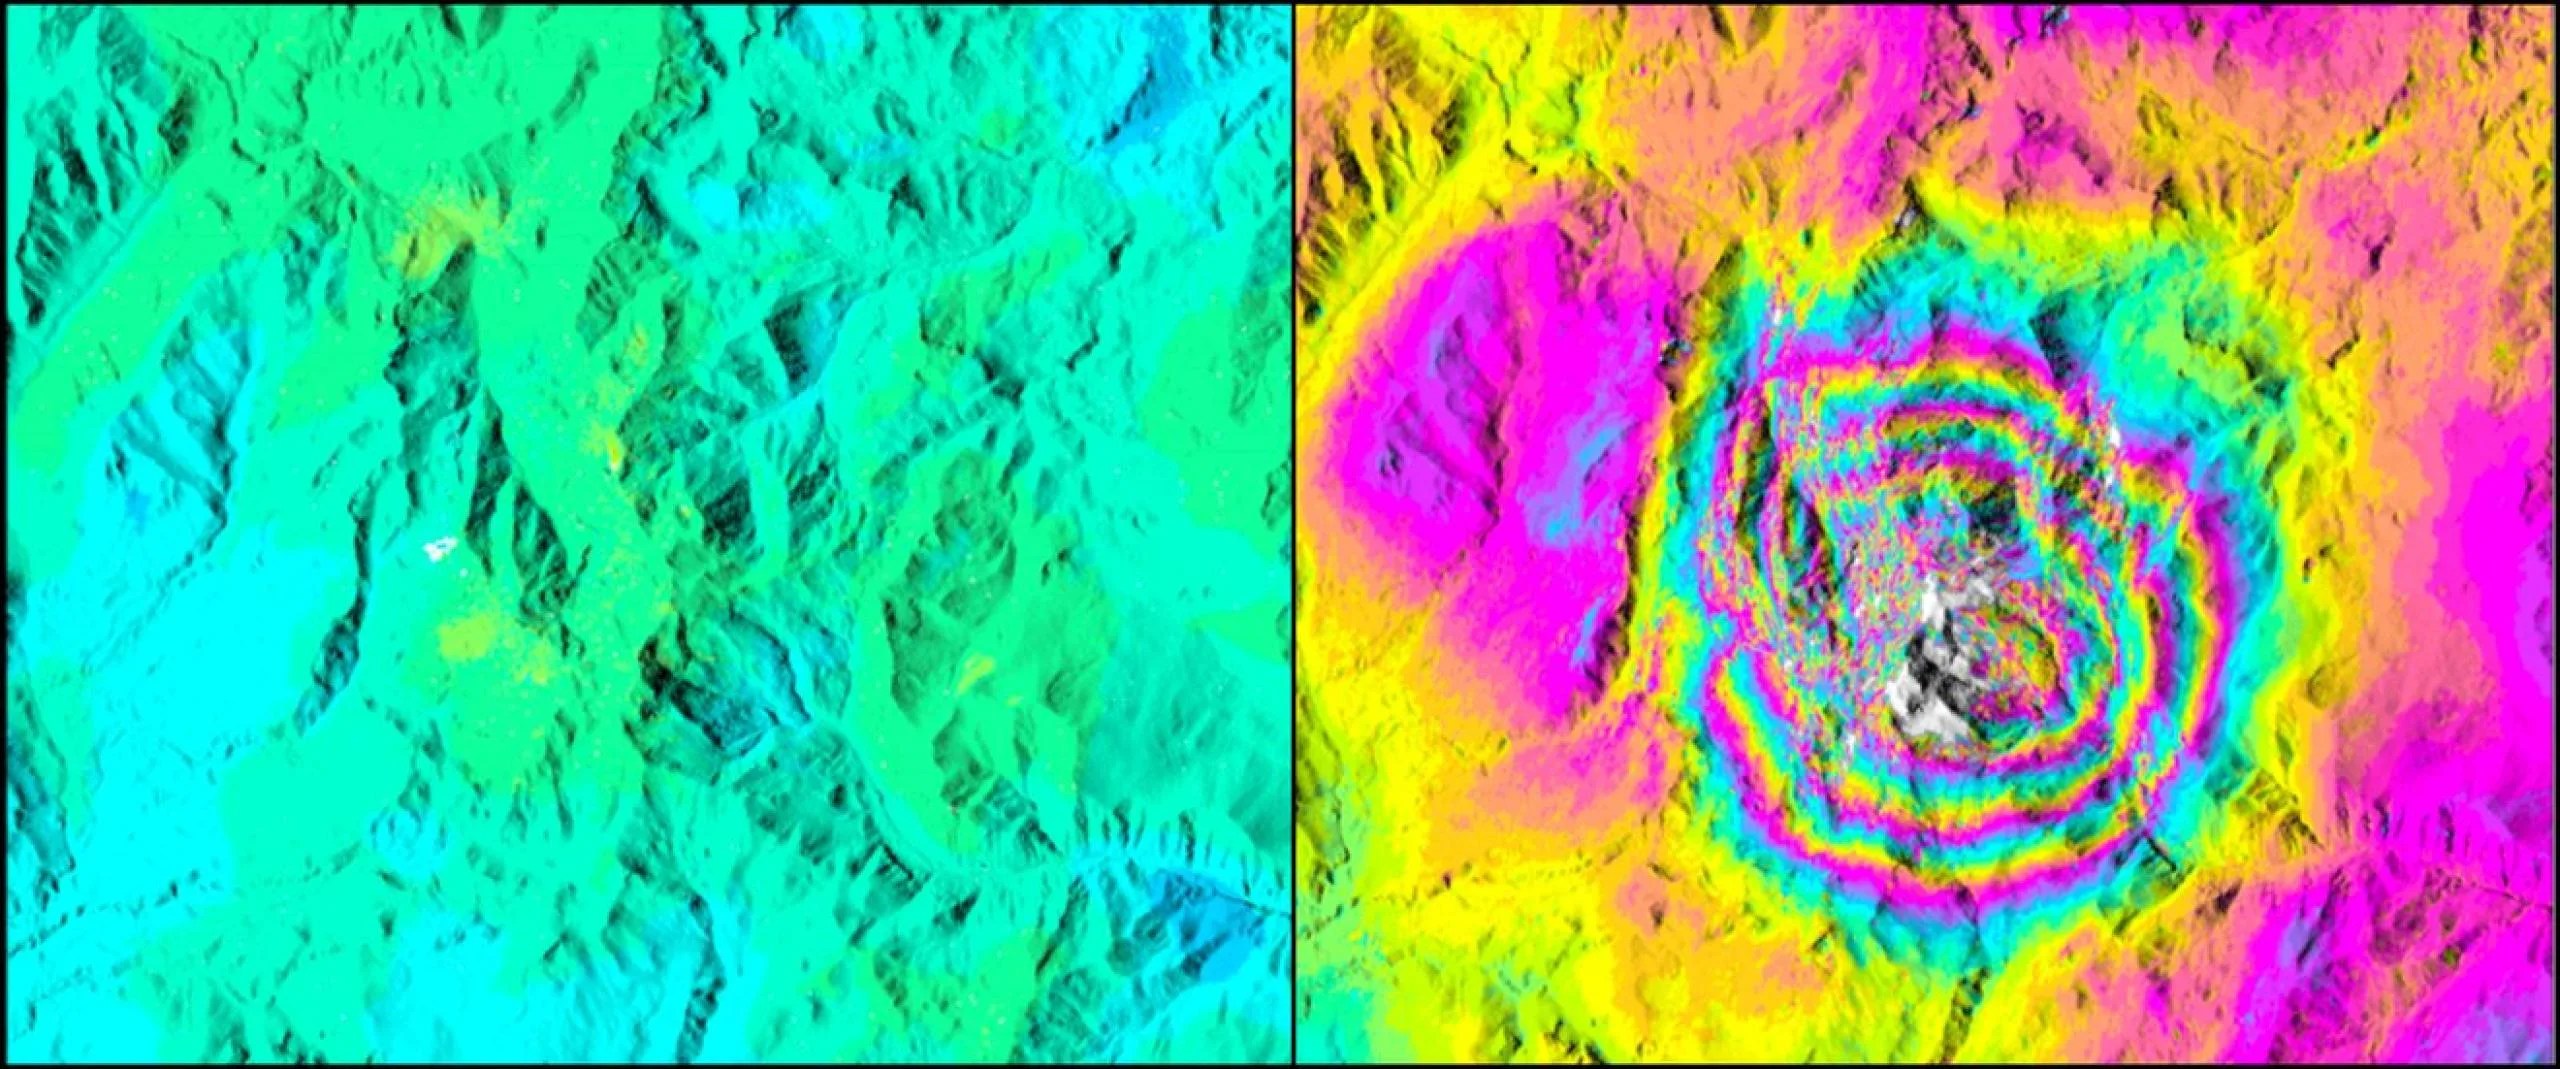 En estas imágenes del volcán argentino Domuyo tomadas con el radar interferométrico de apertura sintética, cada cambio de color se correlaciona con un cambio de unos 10 centímetros (4 pulgadas) de altura. La imagen de color sólido, a la izquierda, muestra que la altura del Domuyo se mantuvo estable entre 2013 y 2014; la imagen multicolor muestra un rápido inflamiento entre 2015 y 2019. Crédito: NASA/JPL-Caltech